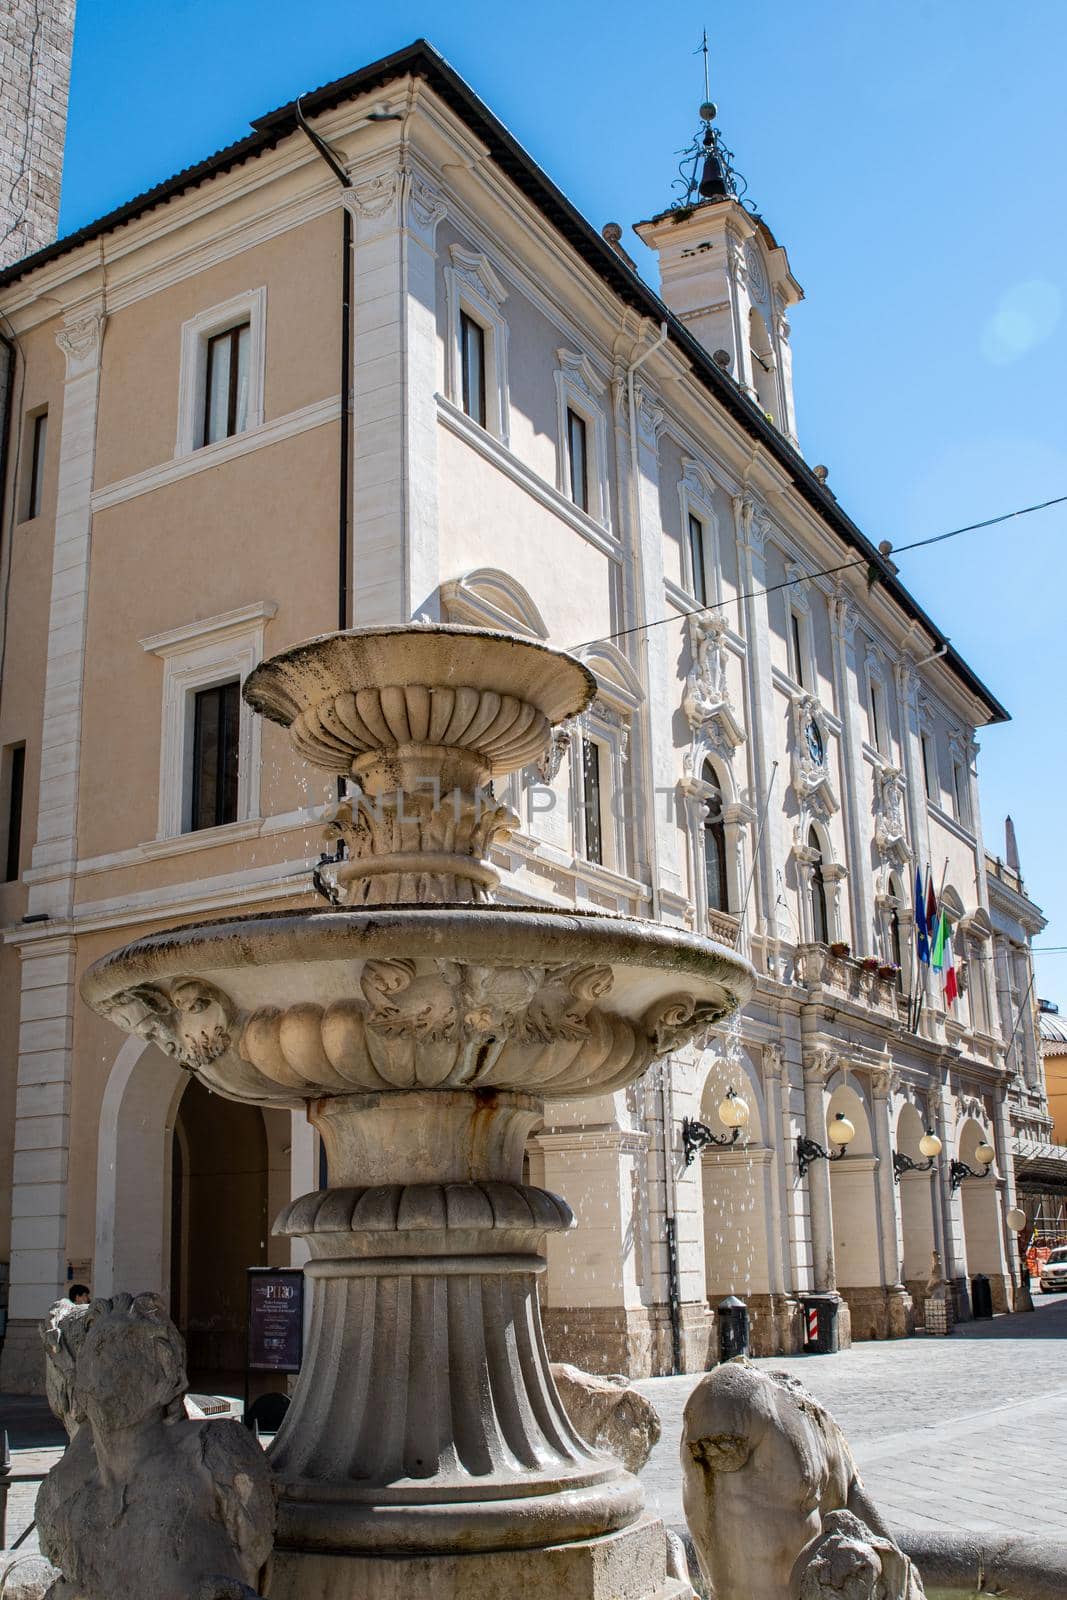 rieti fountain in piazza vittorio emanuele II by carfedeph